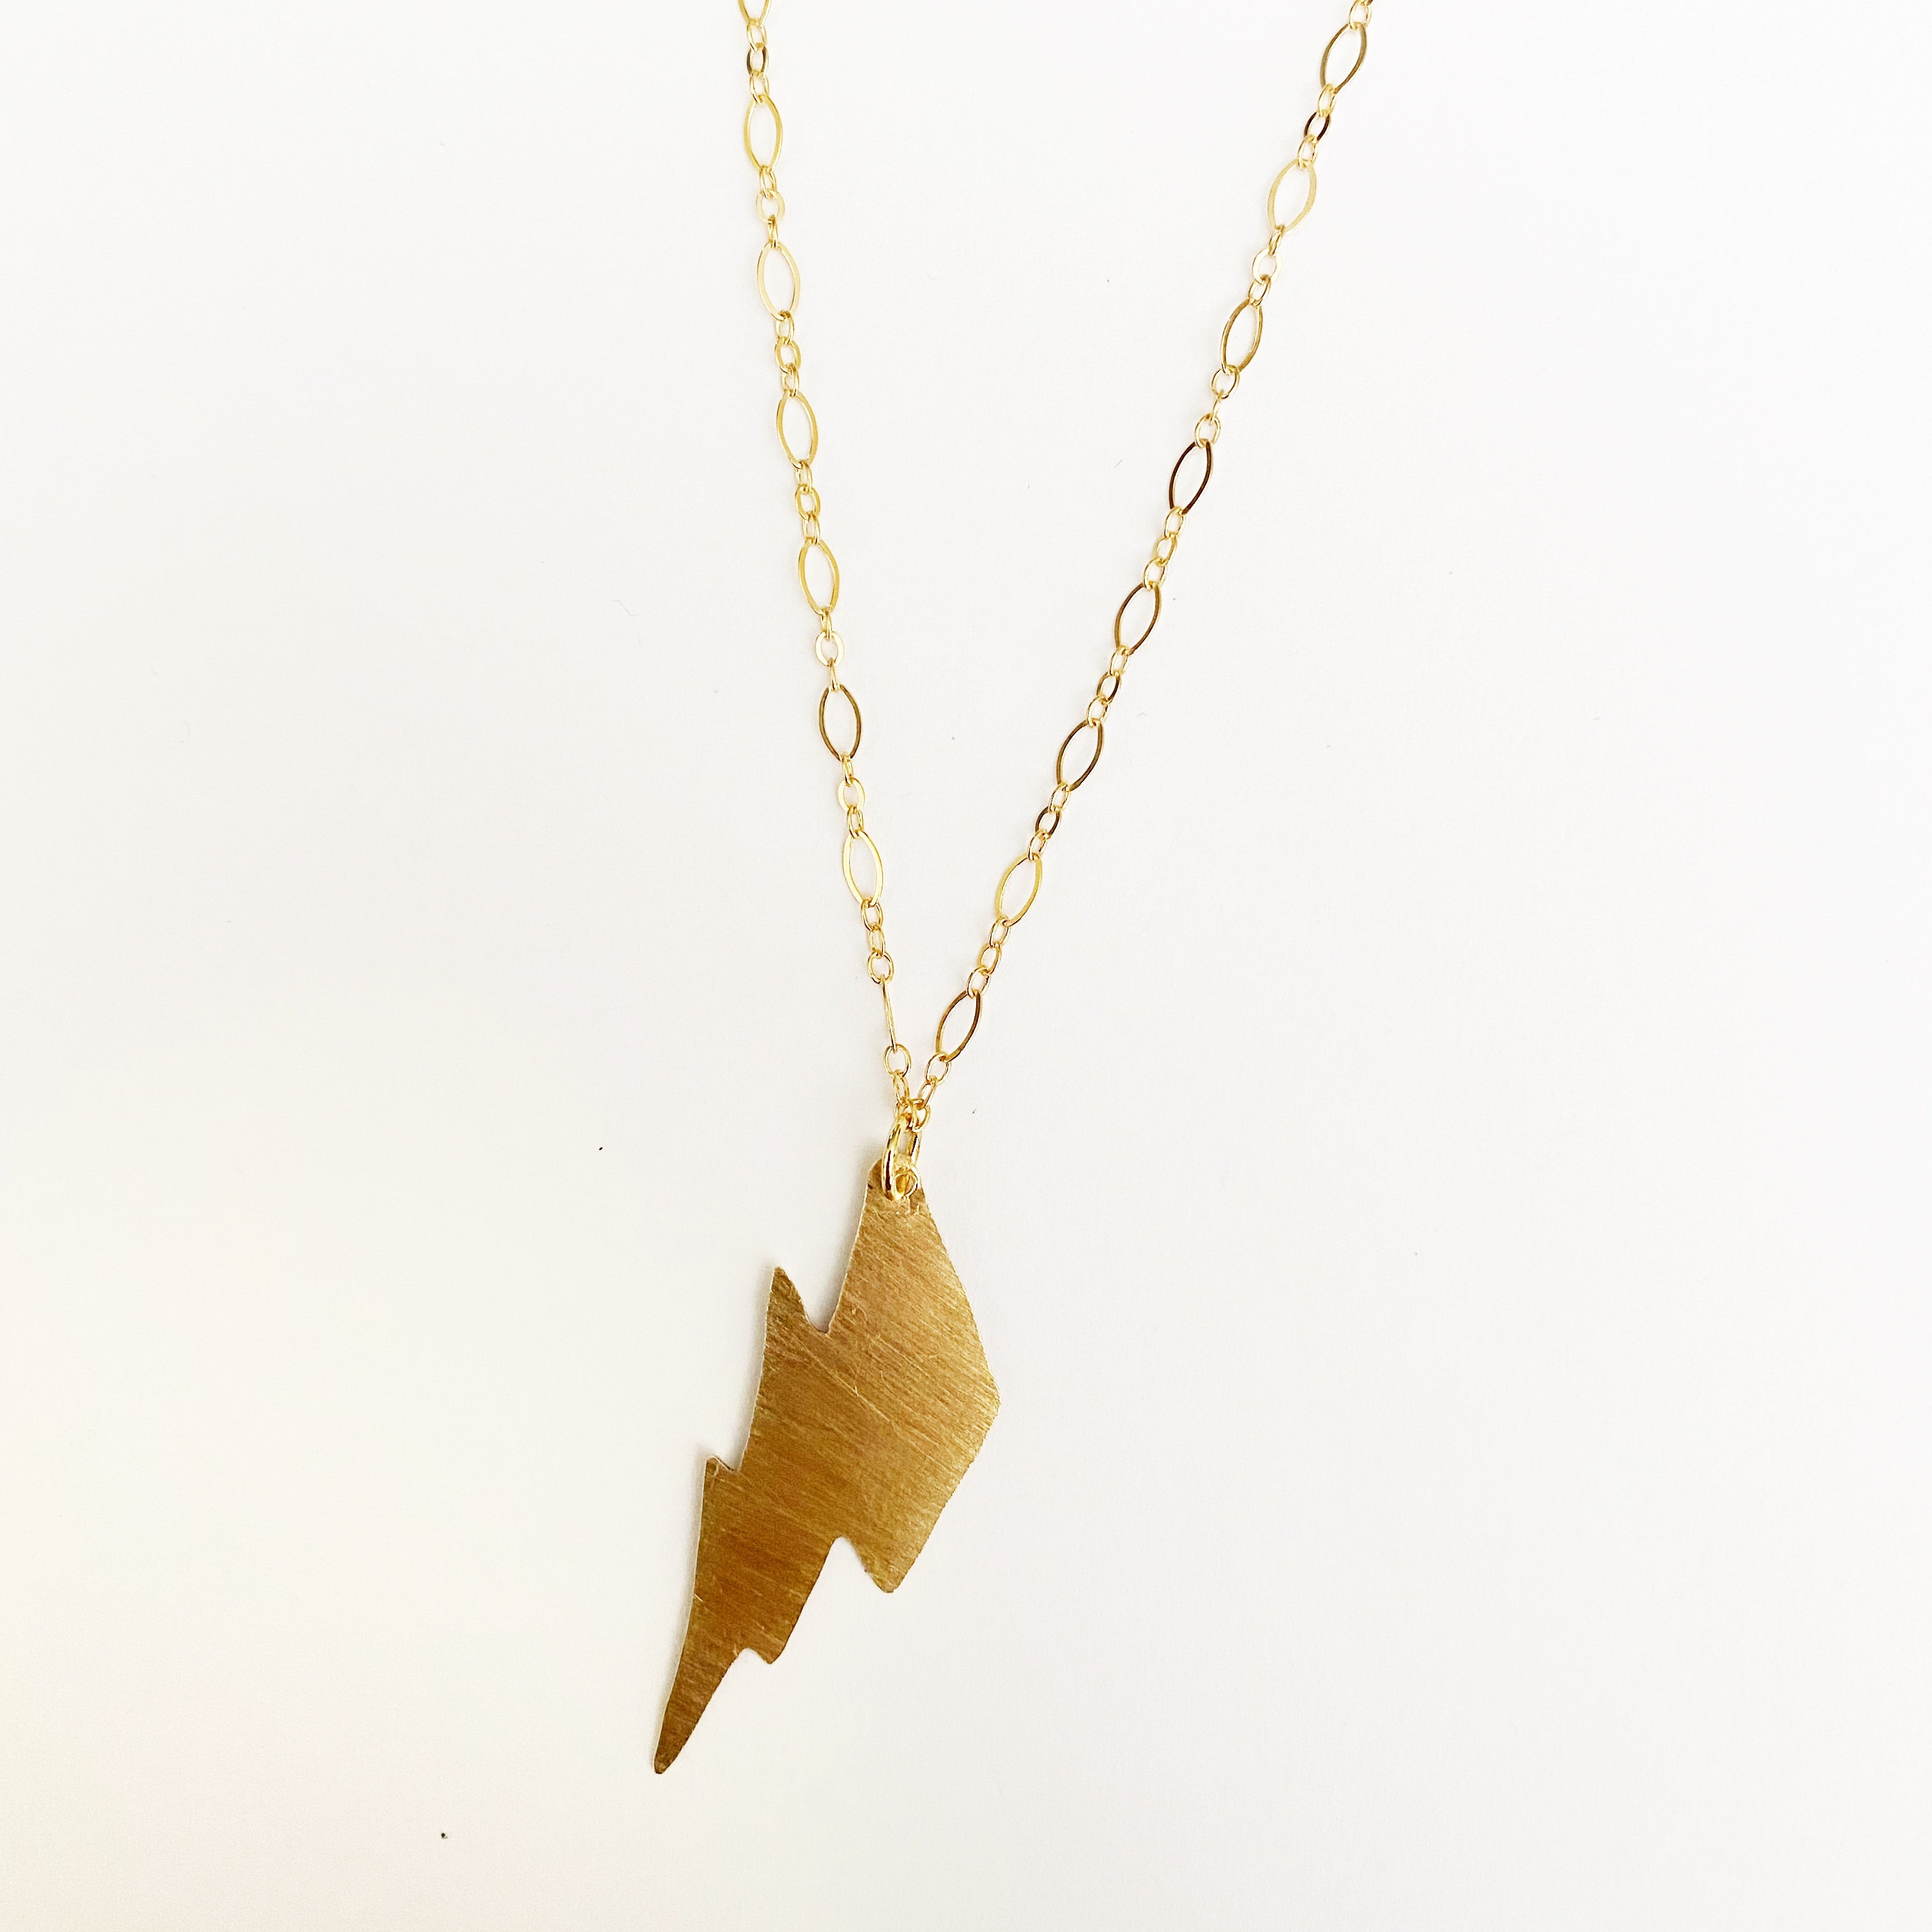 Mini Lightning Bolt Necklace in Brass / 14 Karat Gold Fill